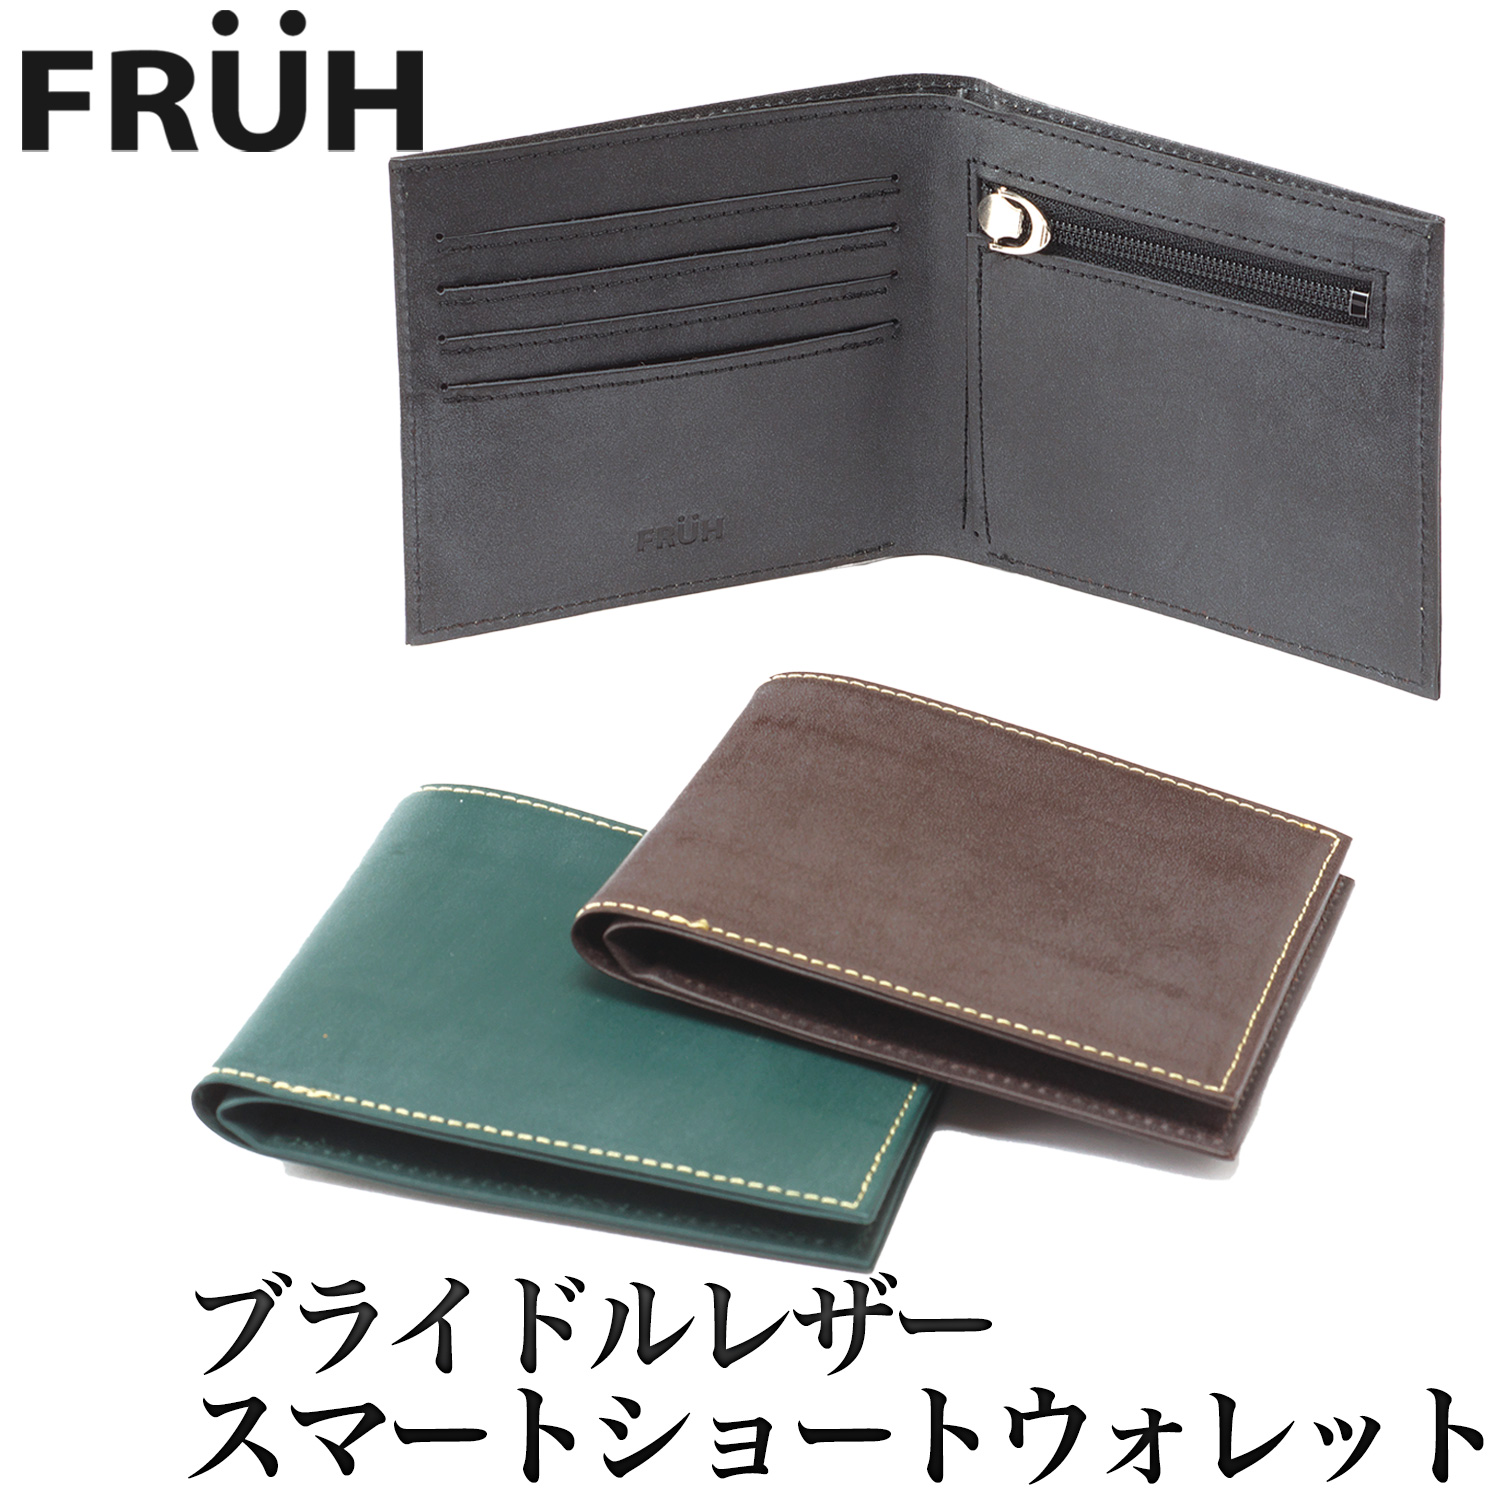 フリュー] スマートショートウォレット 二つ折り財布 コードバン